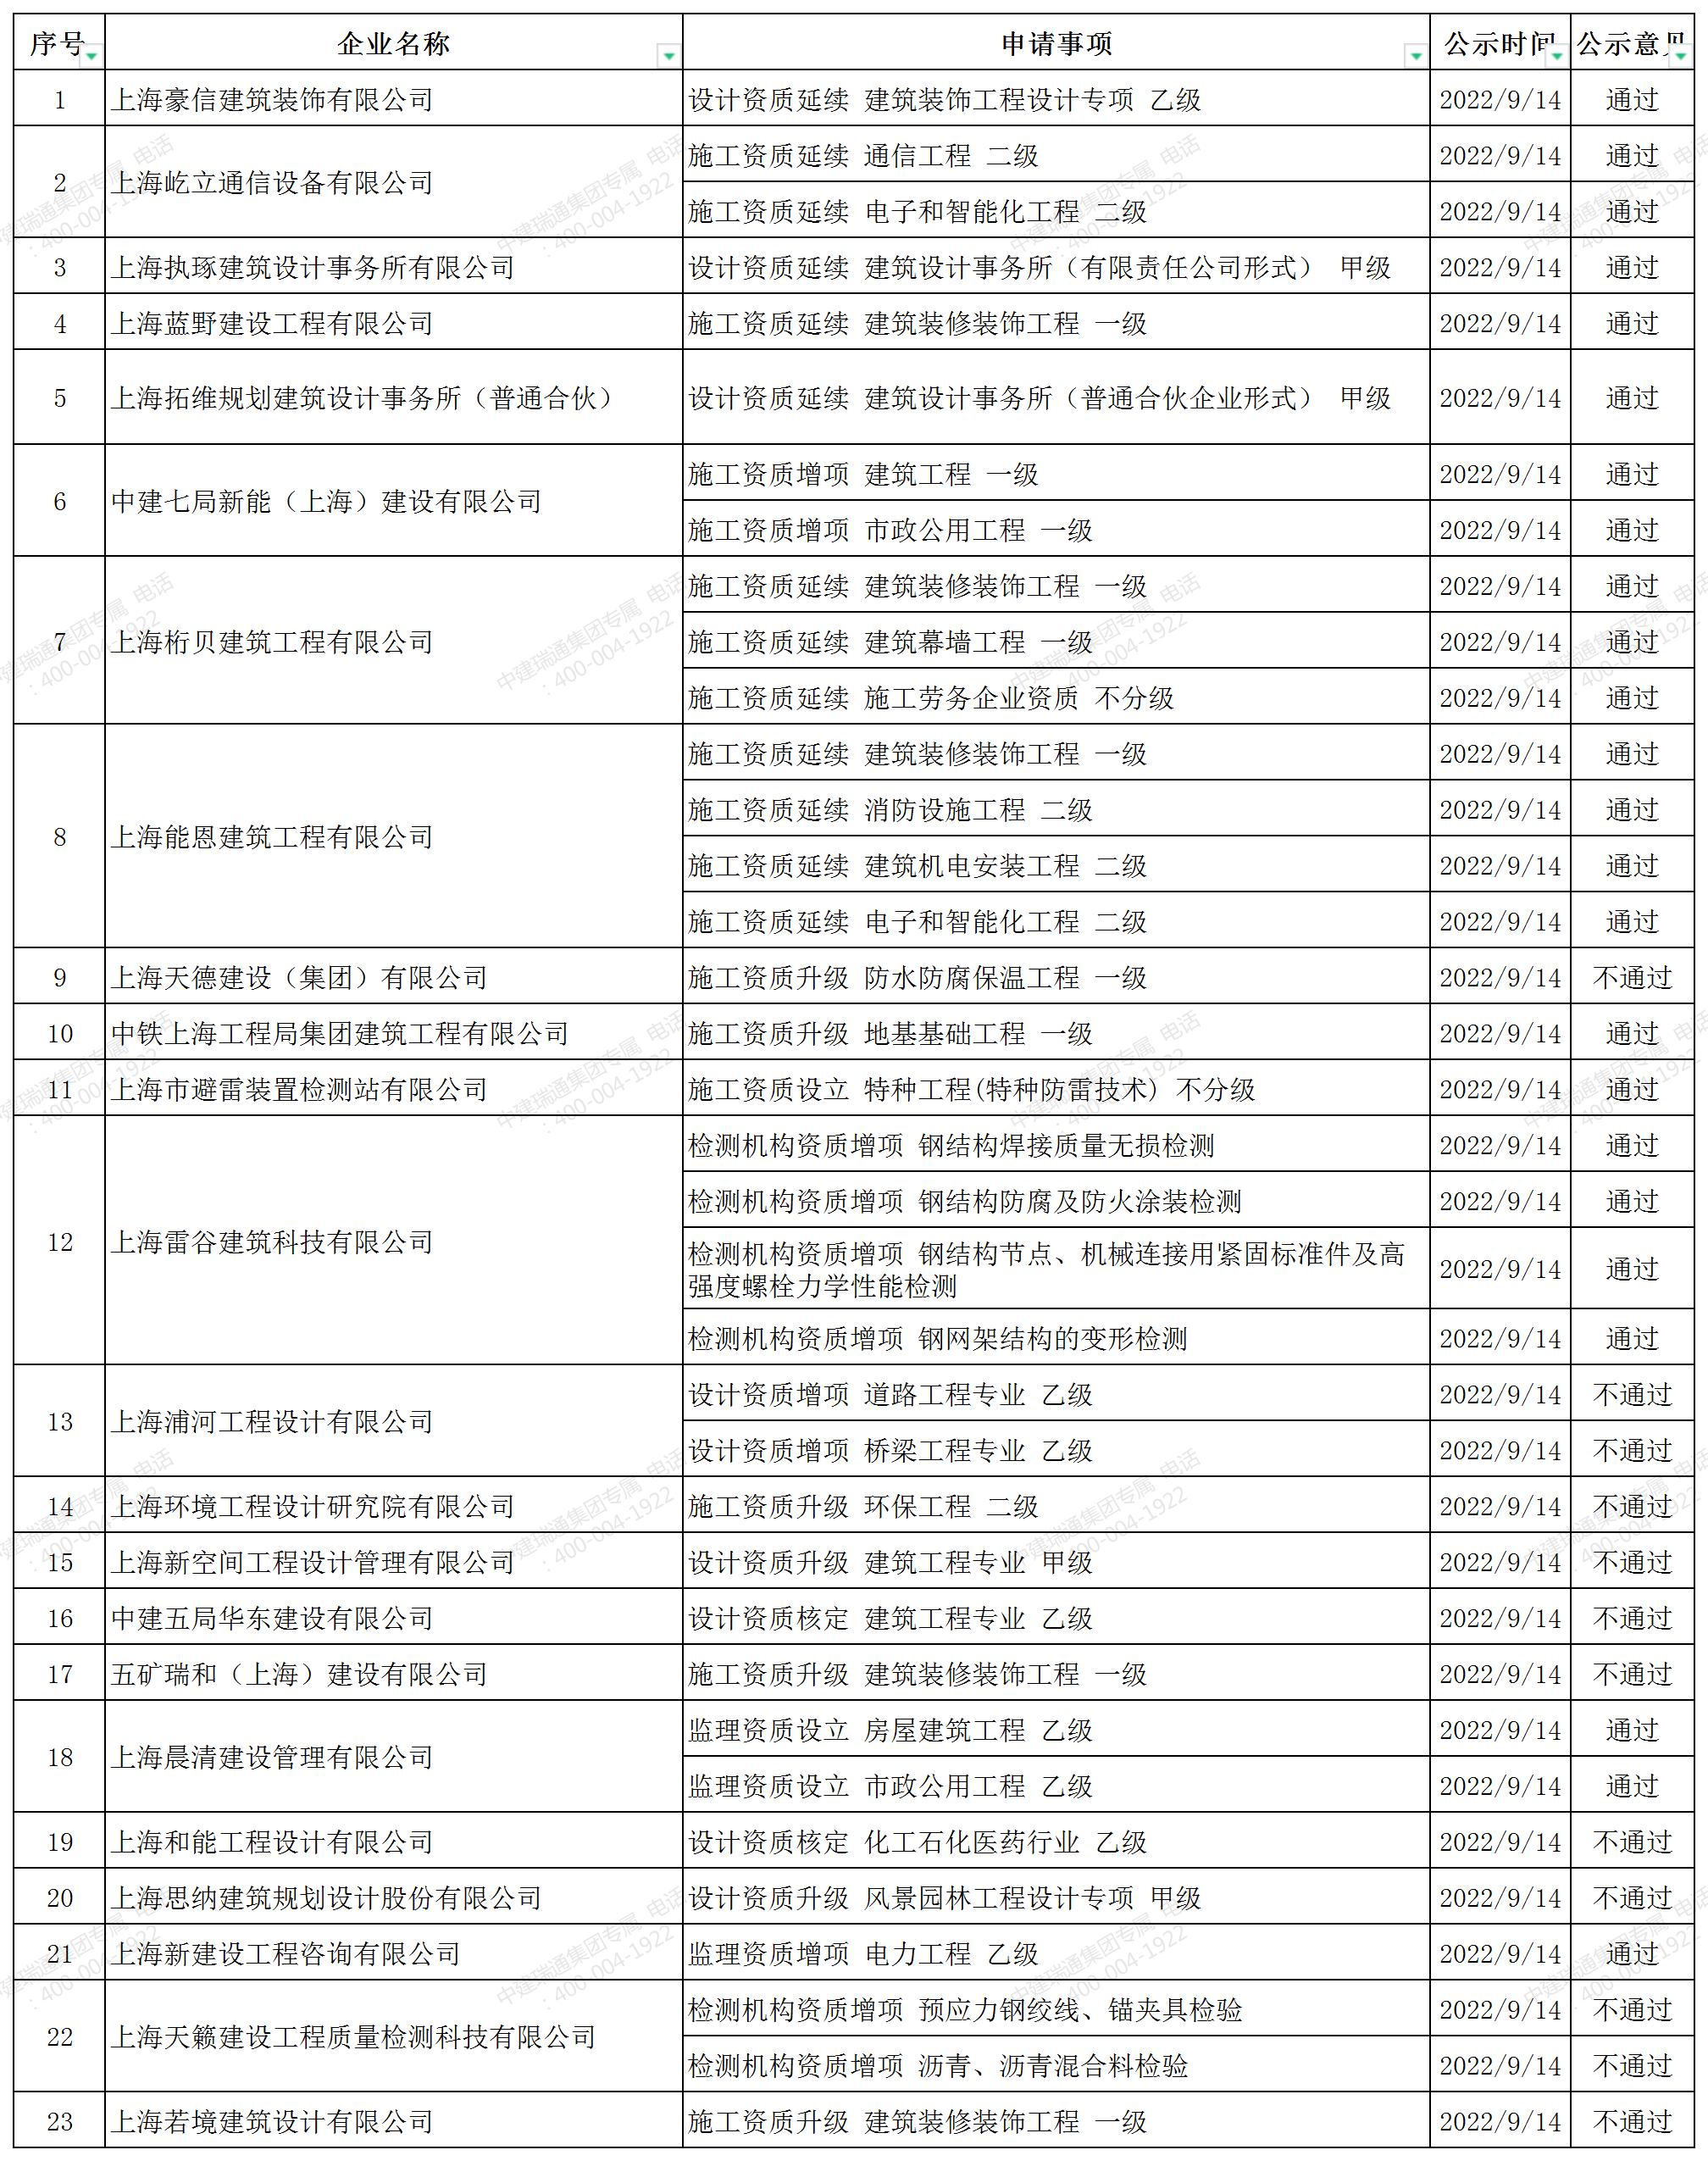 上海市公示公告周报_A1E37.jpg